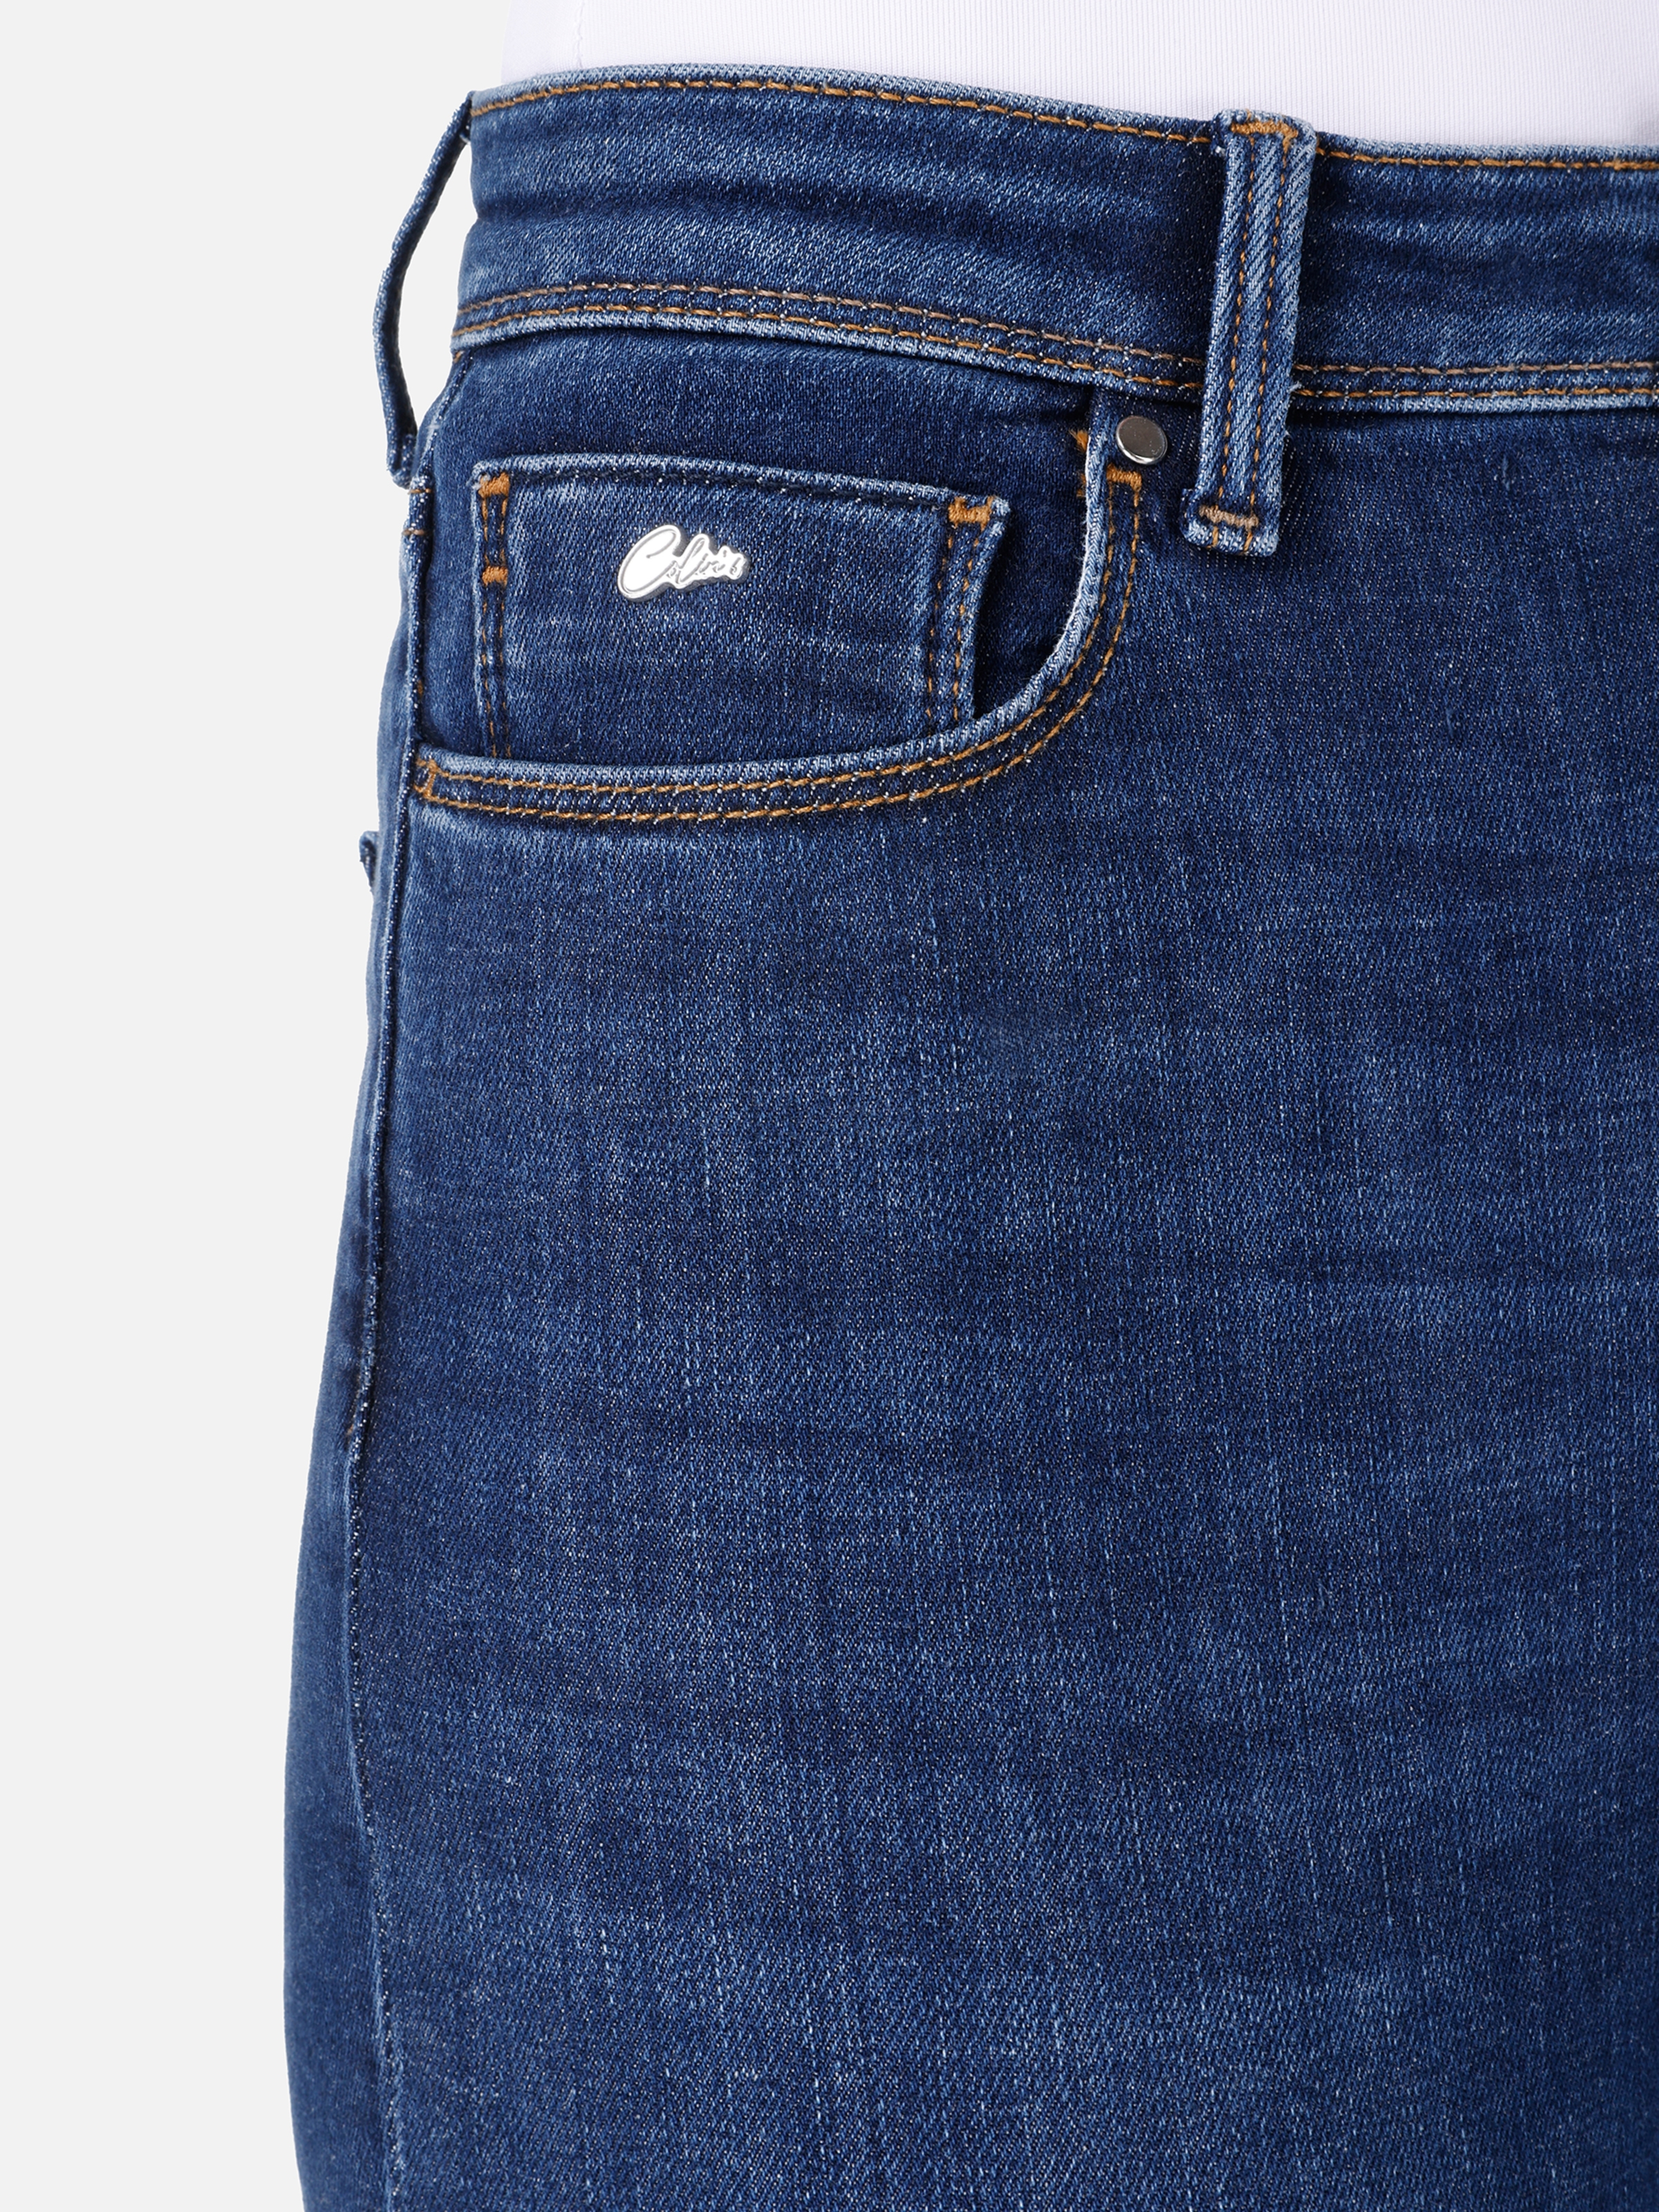 Afișați detalii pentru Pantaloni De Dama Albastru inchis Skinny Fit 760 DIANA 